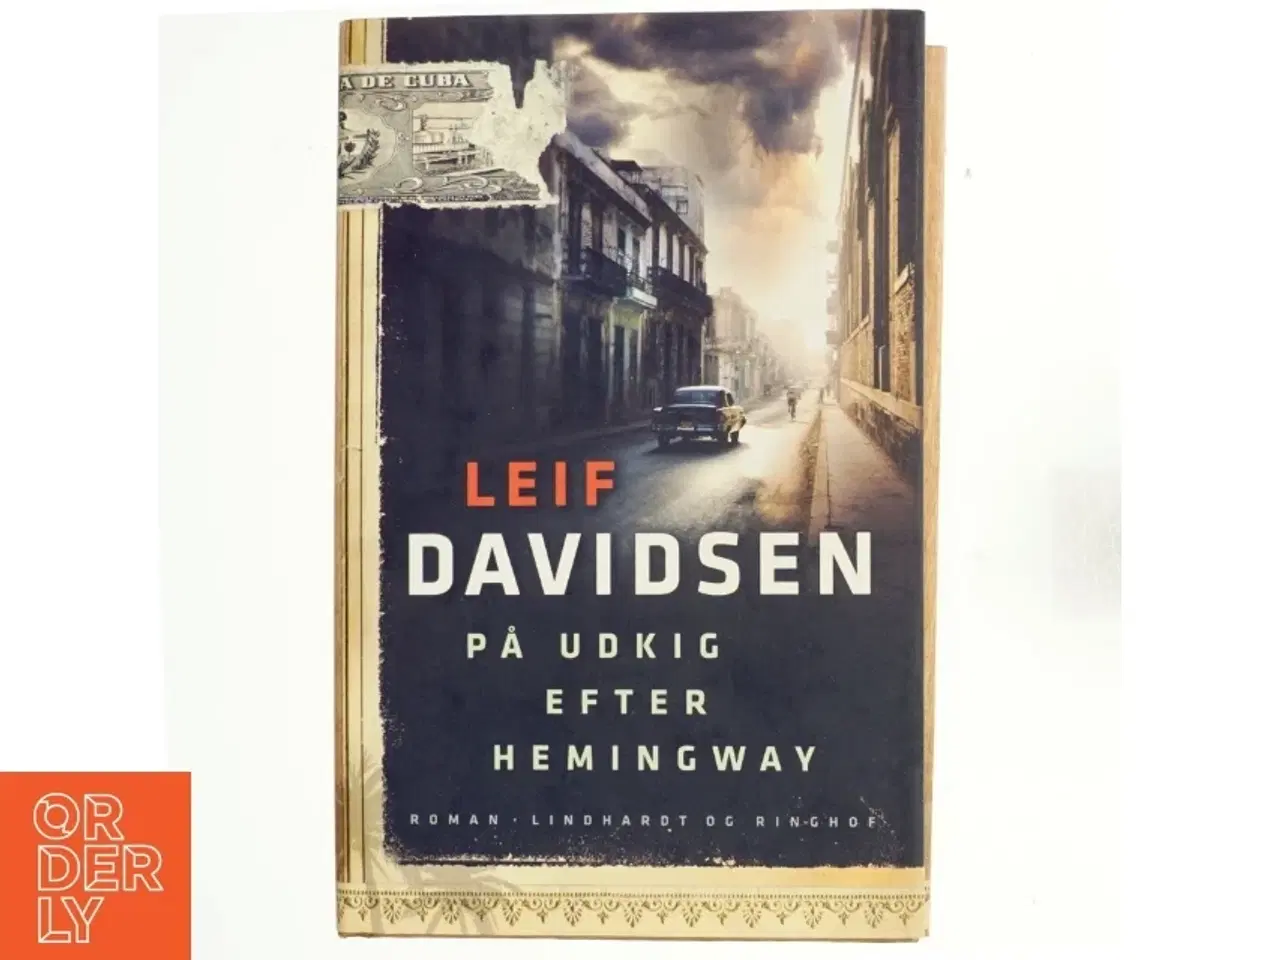 Billede 1 - På udkig efter Hemingway af Leif Davidsen (Bog)